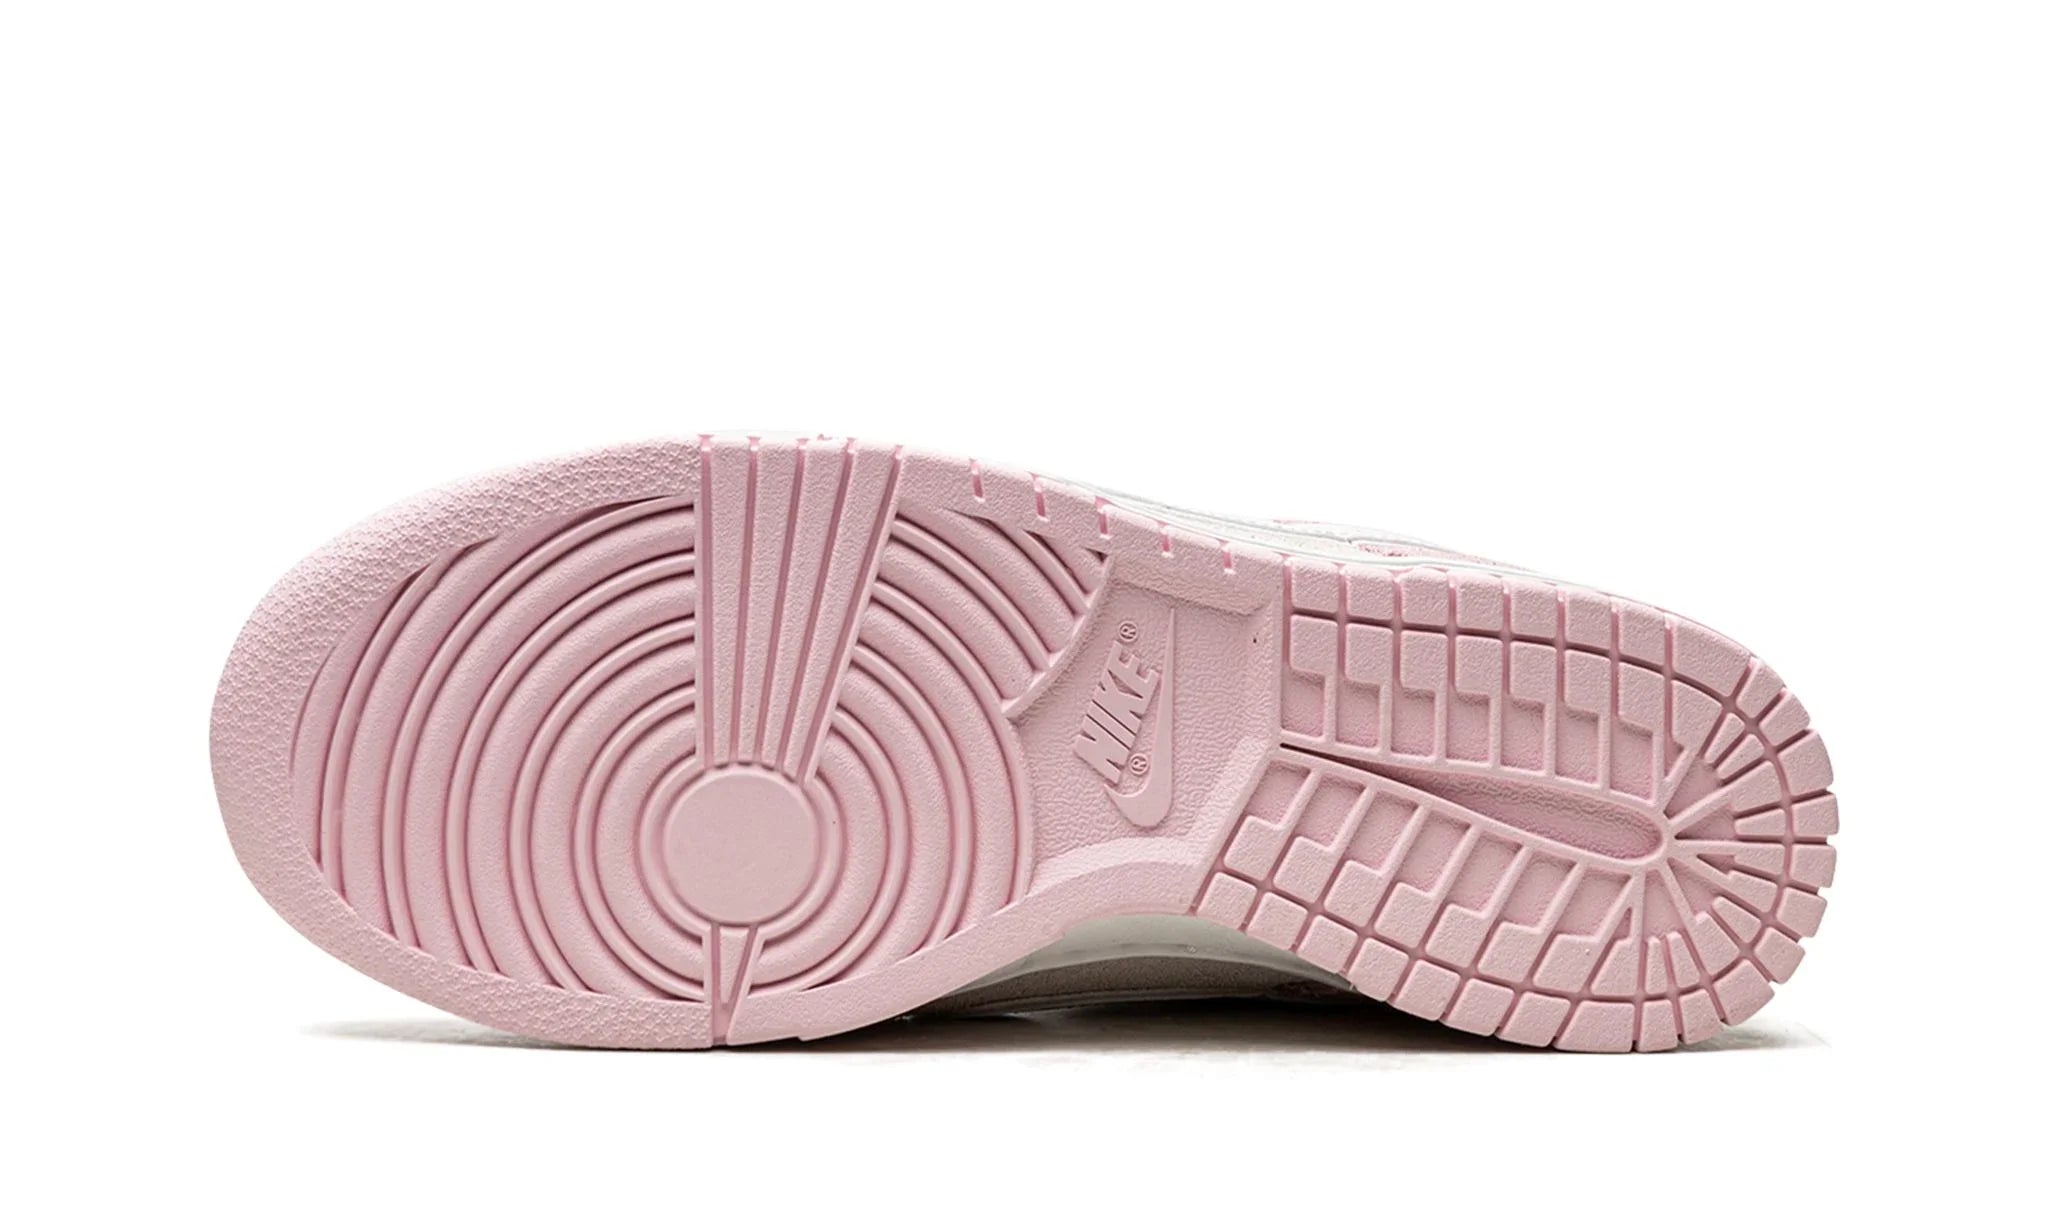 Nike Dunk Low LX "Pink Foam" (W) - DV3054-600 - Sneakers